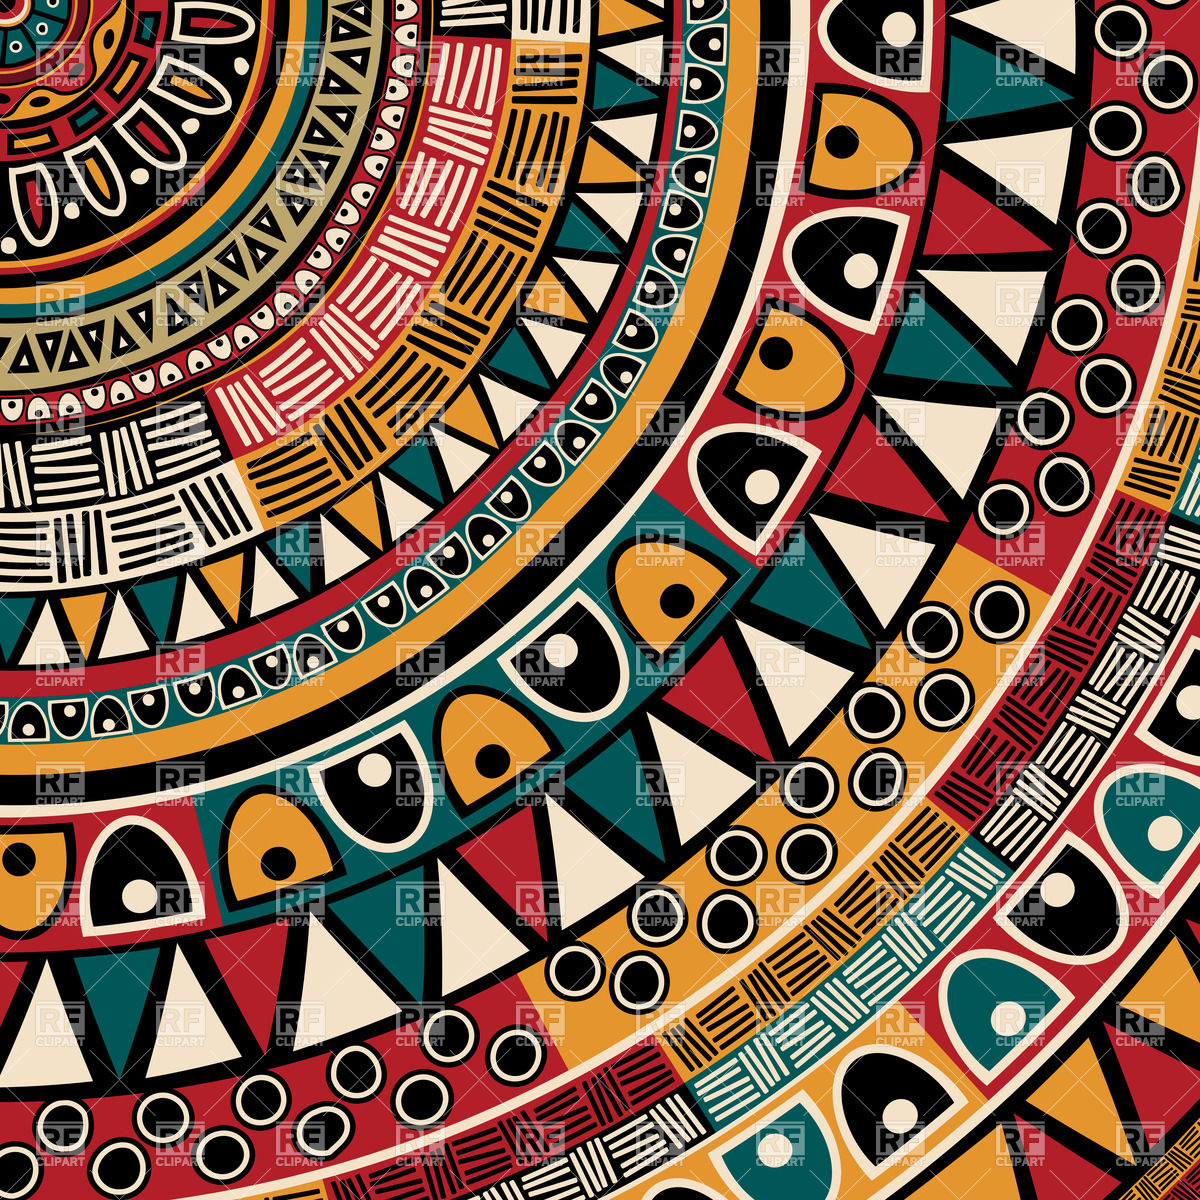 tribal wallpaper design